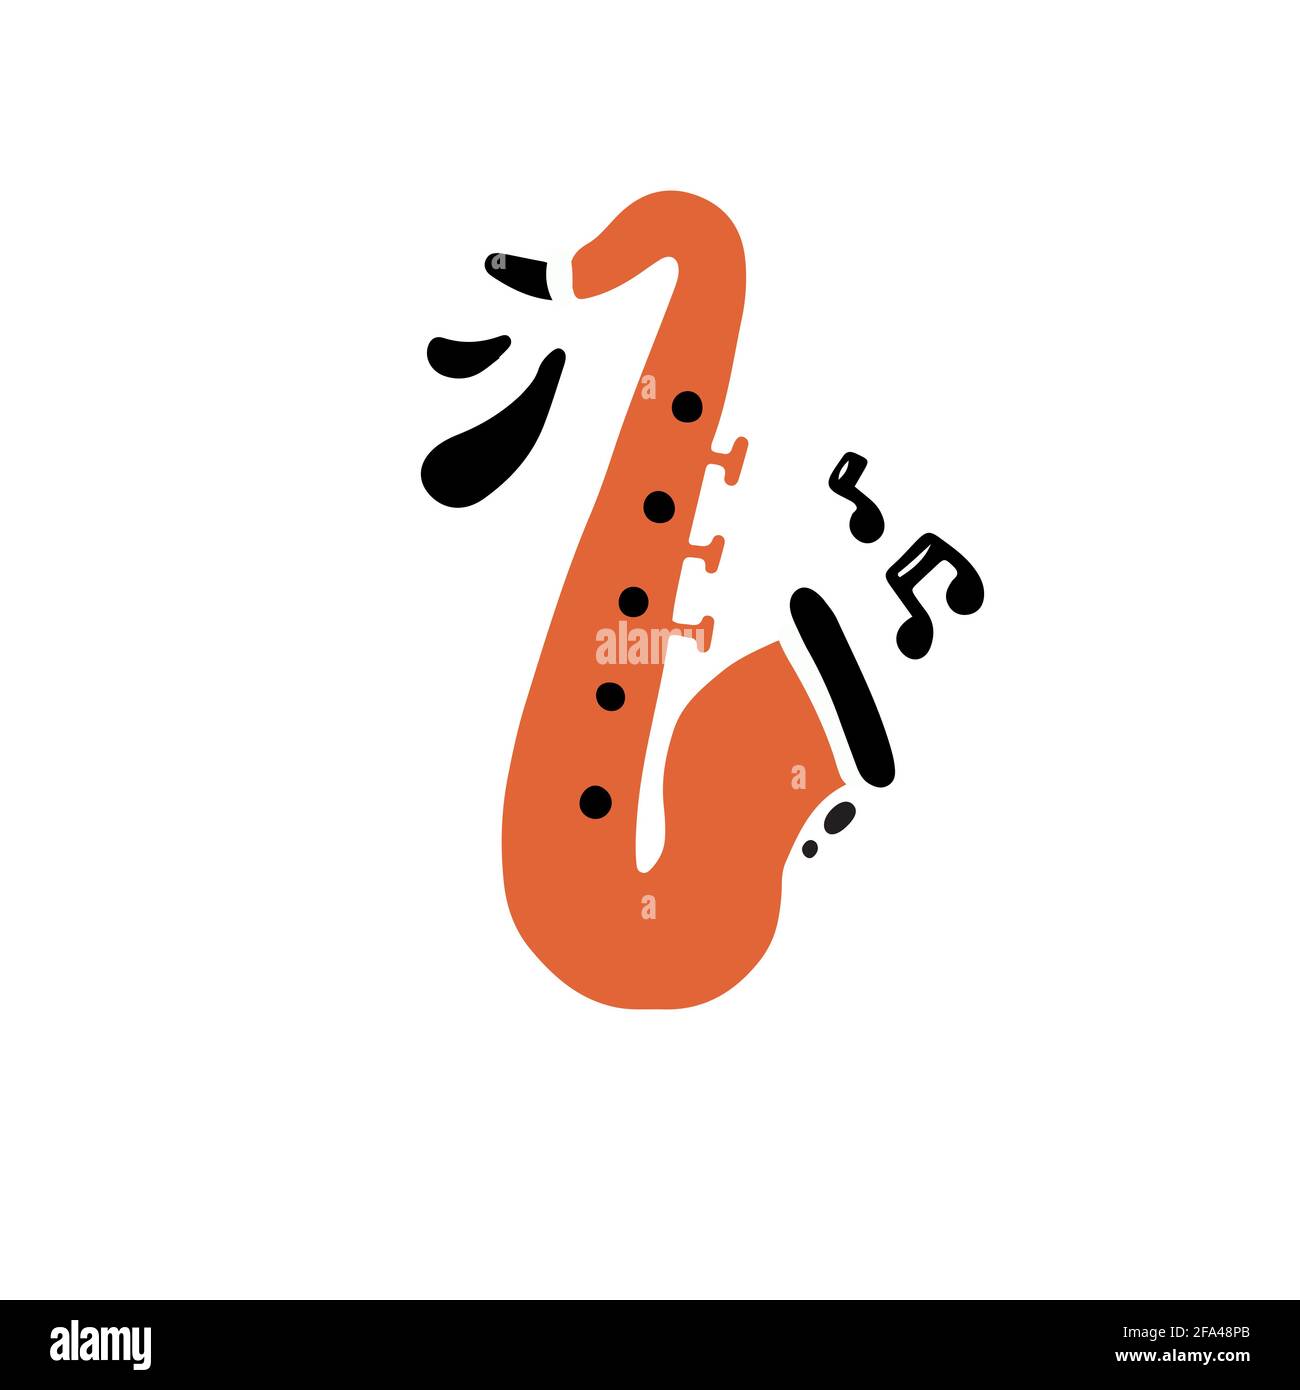 Minimalistische handgezeichnete Vektor-Illustration im flachen Stil von traditionellem Messing Instrument der lebendigen orange Farbe genannt Saxophon spielen laut kreativ Musik mit schwarzen Noten dargestellt Stock Vektor